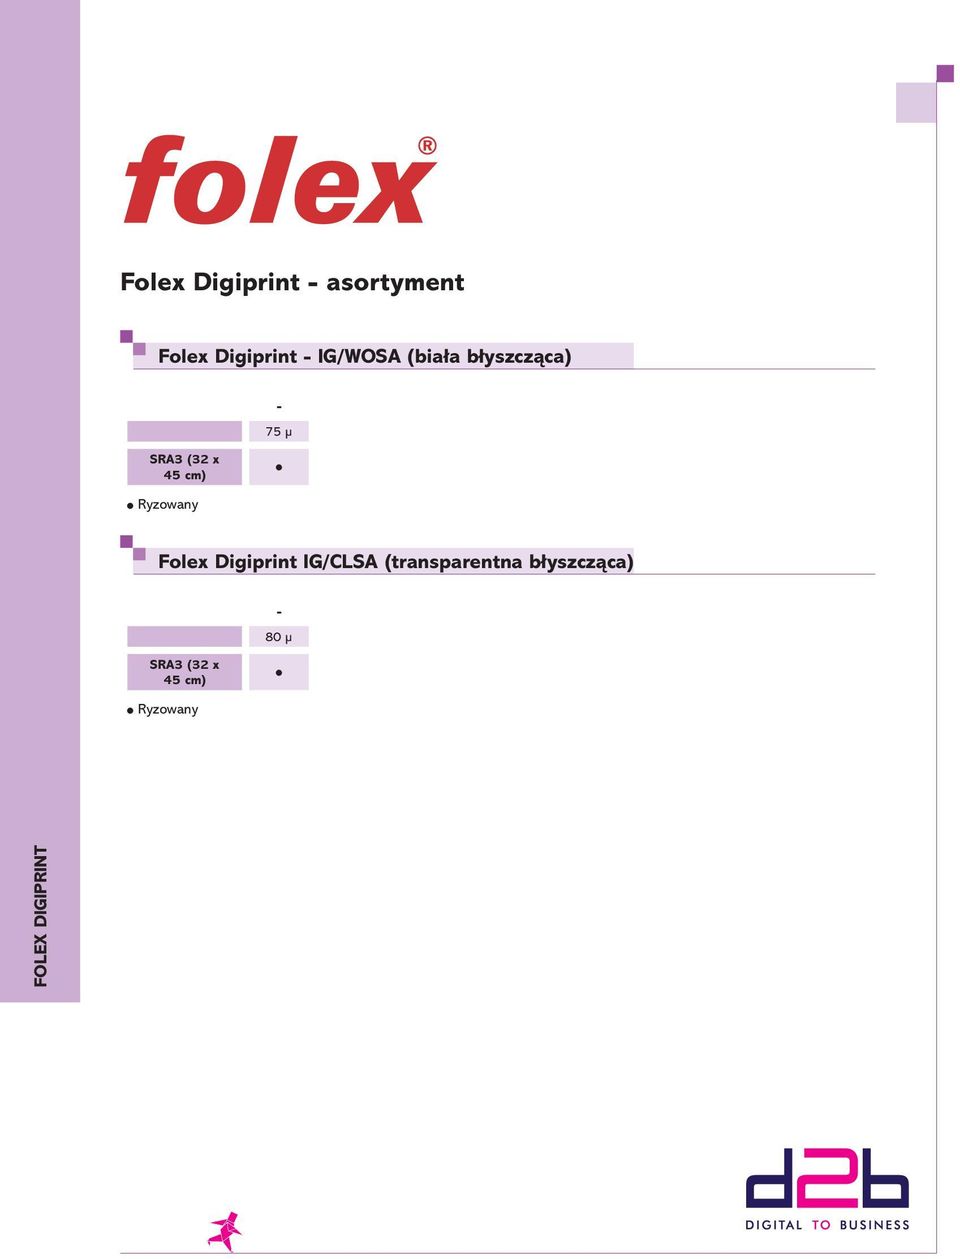 cm) l Folex Digiprint IG/CLSA (transparentna